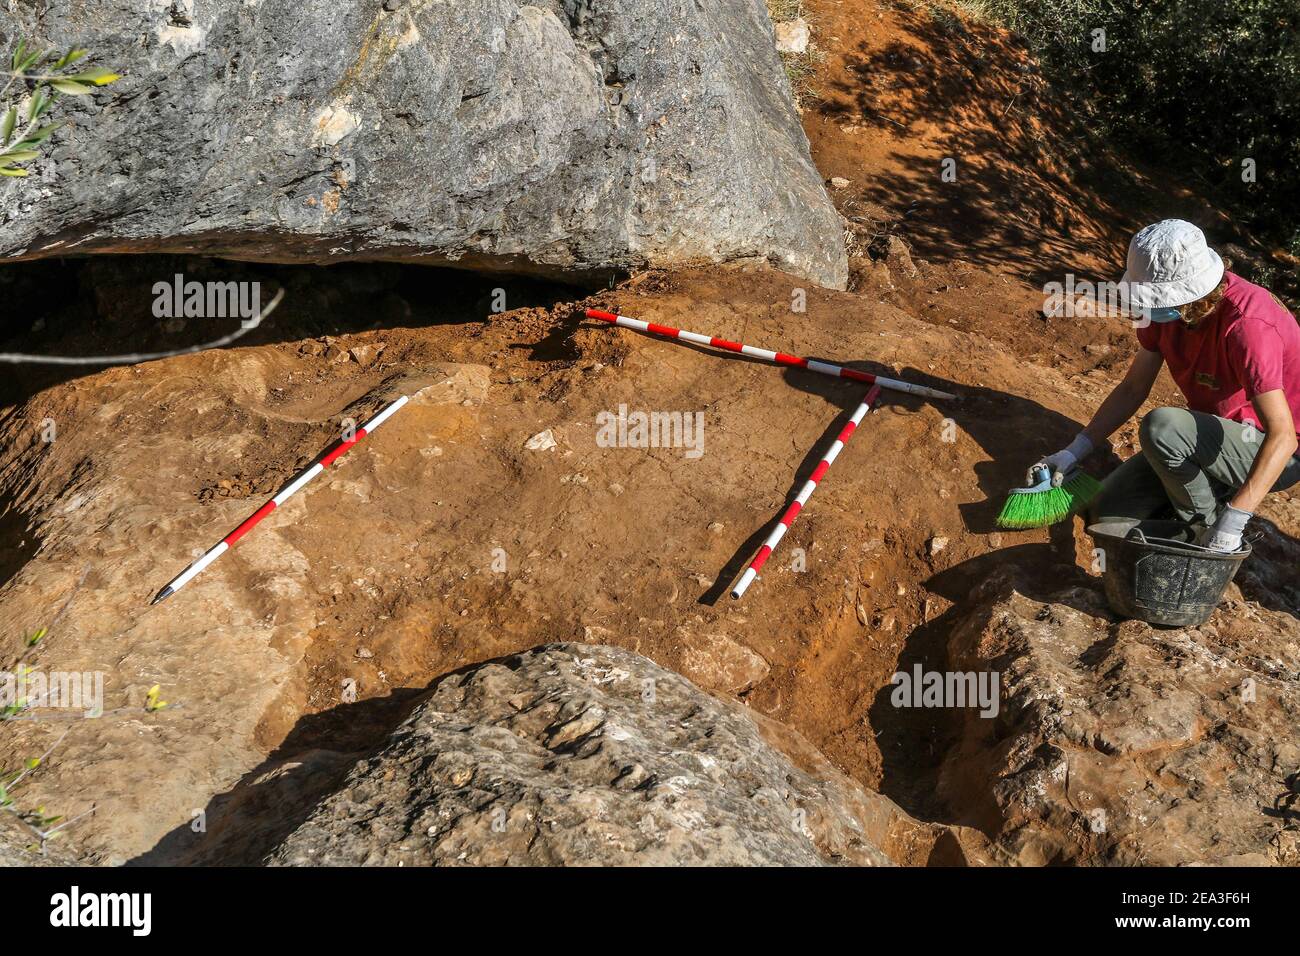 7 février 2021 : 7 février 2021 (Casabermeja, Malaga ) Nouvelle découverte archéologique à Casabermeja. C'est la découverte d'une nécropole d'au moins 5,000 ans, située dans la région appelée Piedras de Mitra, où ont été trouvés en juin dernier différents restes du squelette humain. Après la découverte de plusieurs restes d'os humains, les médecins légistes se sont rendus dans la région pour analyser ces os, datant de la période entre le néolithique et le Chalcolithique.cinq sépultures calcolytiques ont été découvertes dans la covacha, toutes avec leurs biens funéraires correspondants. (Image crédit: © Lorenzo Carnero/ZUMA Wire) Banque D'Images